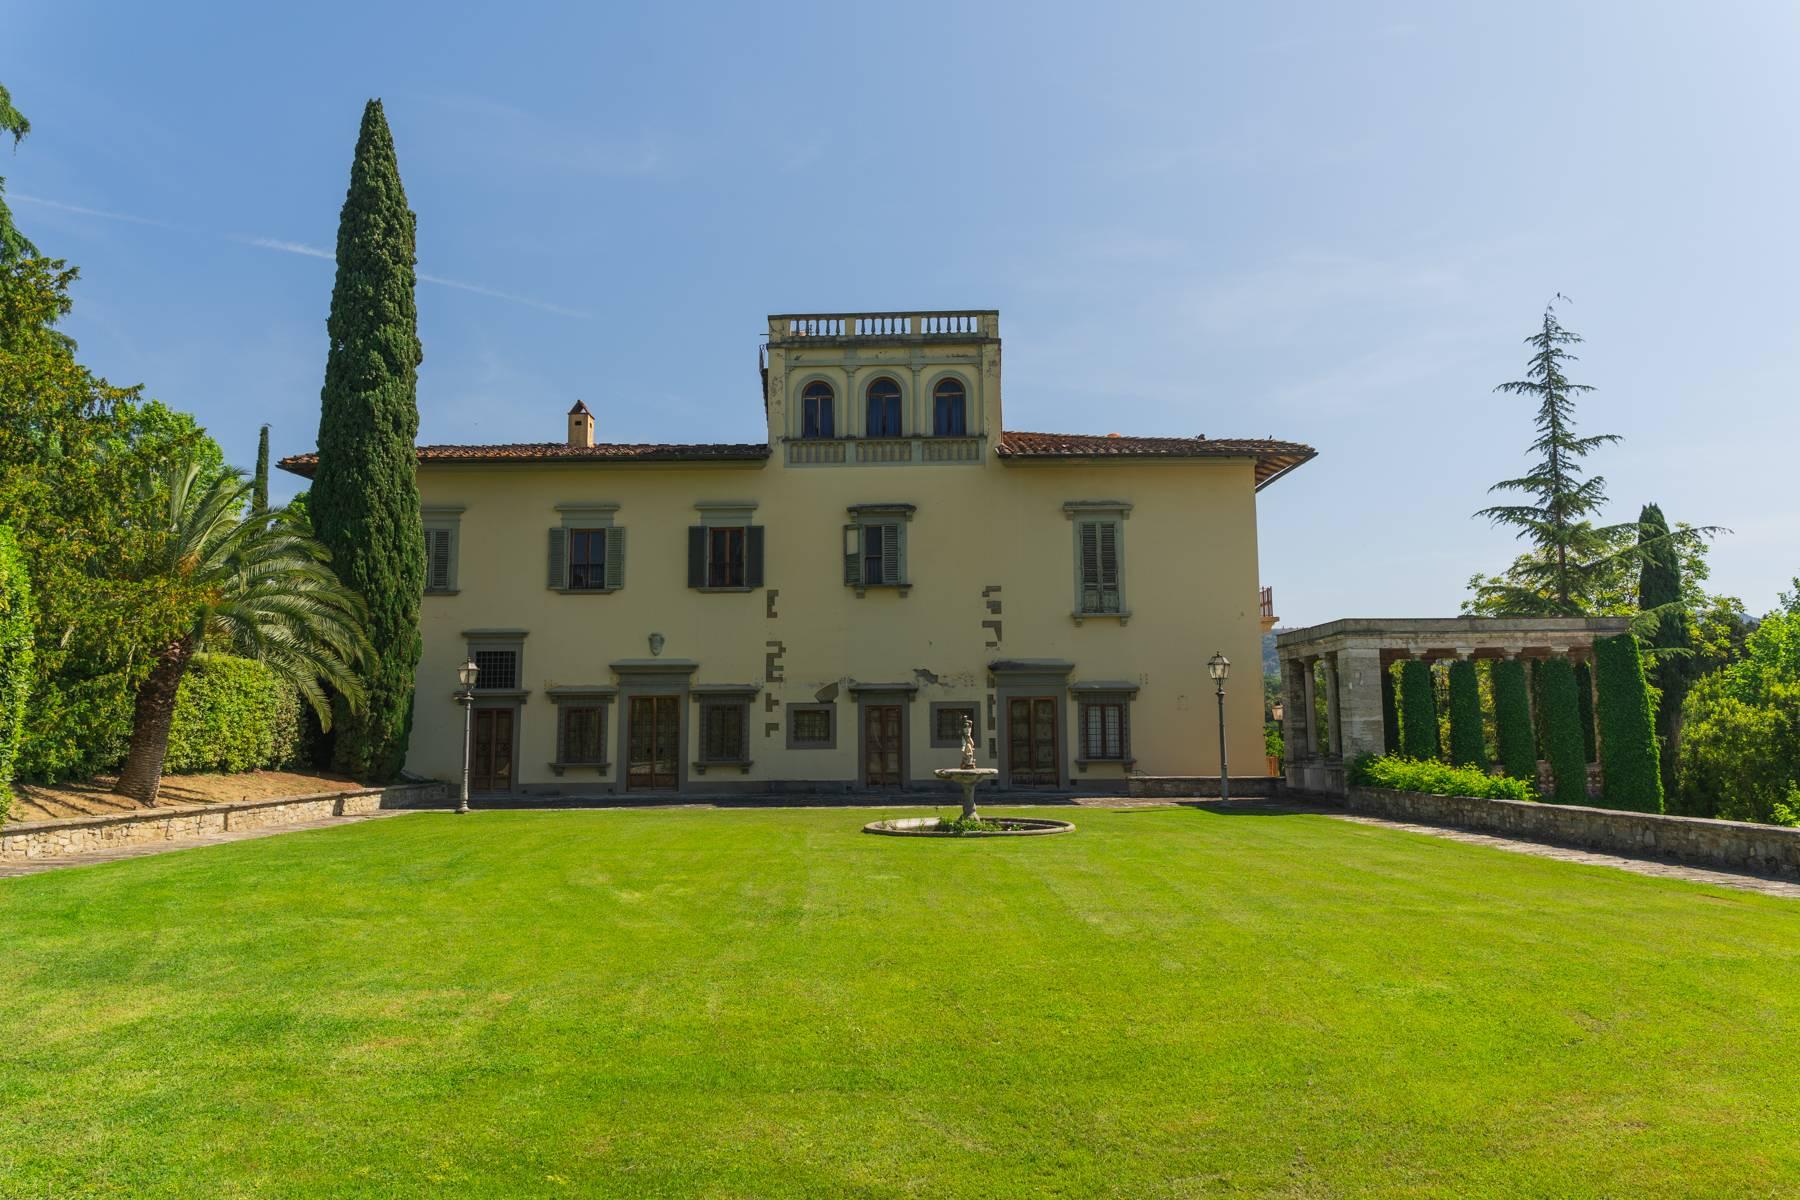 Elegante Villa aus dem 14. Jahrhundert mit einem Hektar Park in Florenz - 5